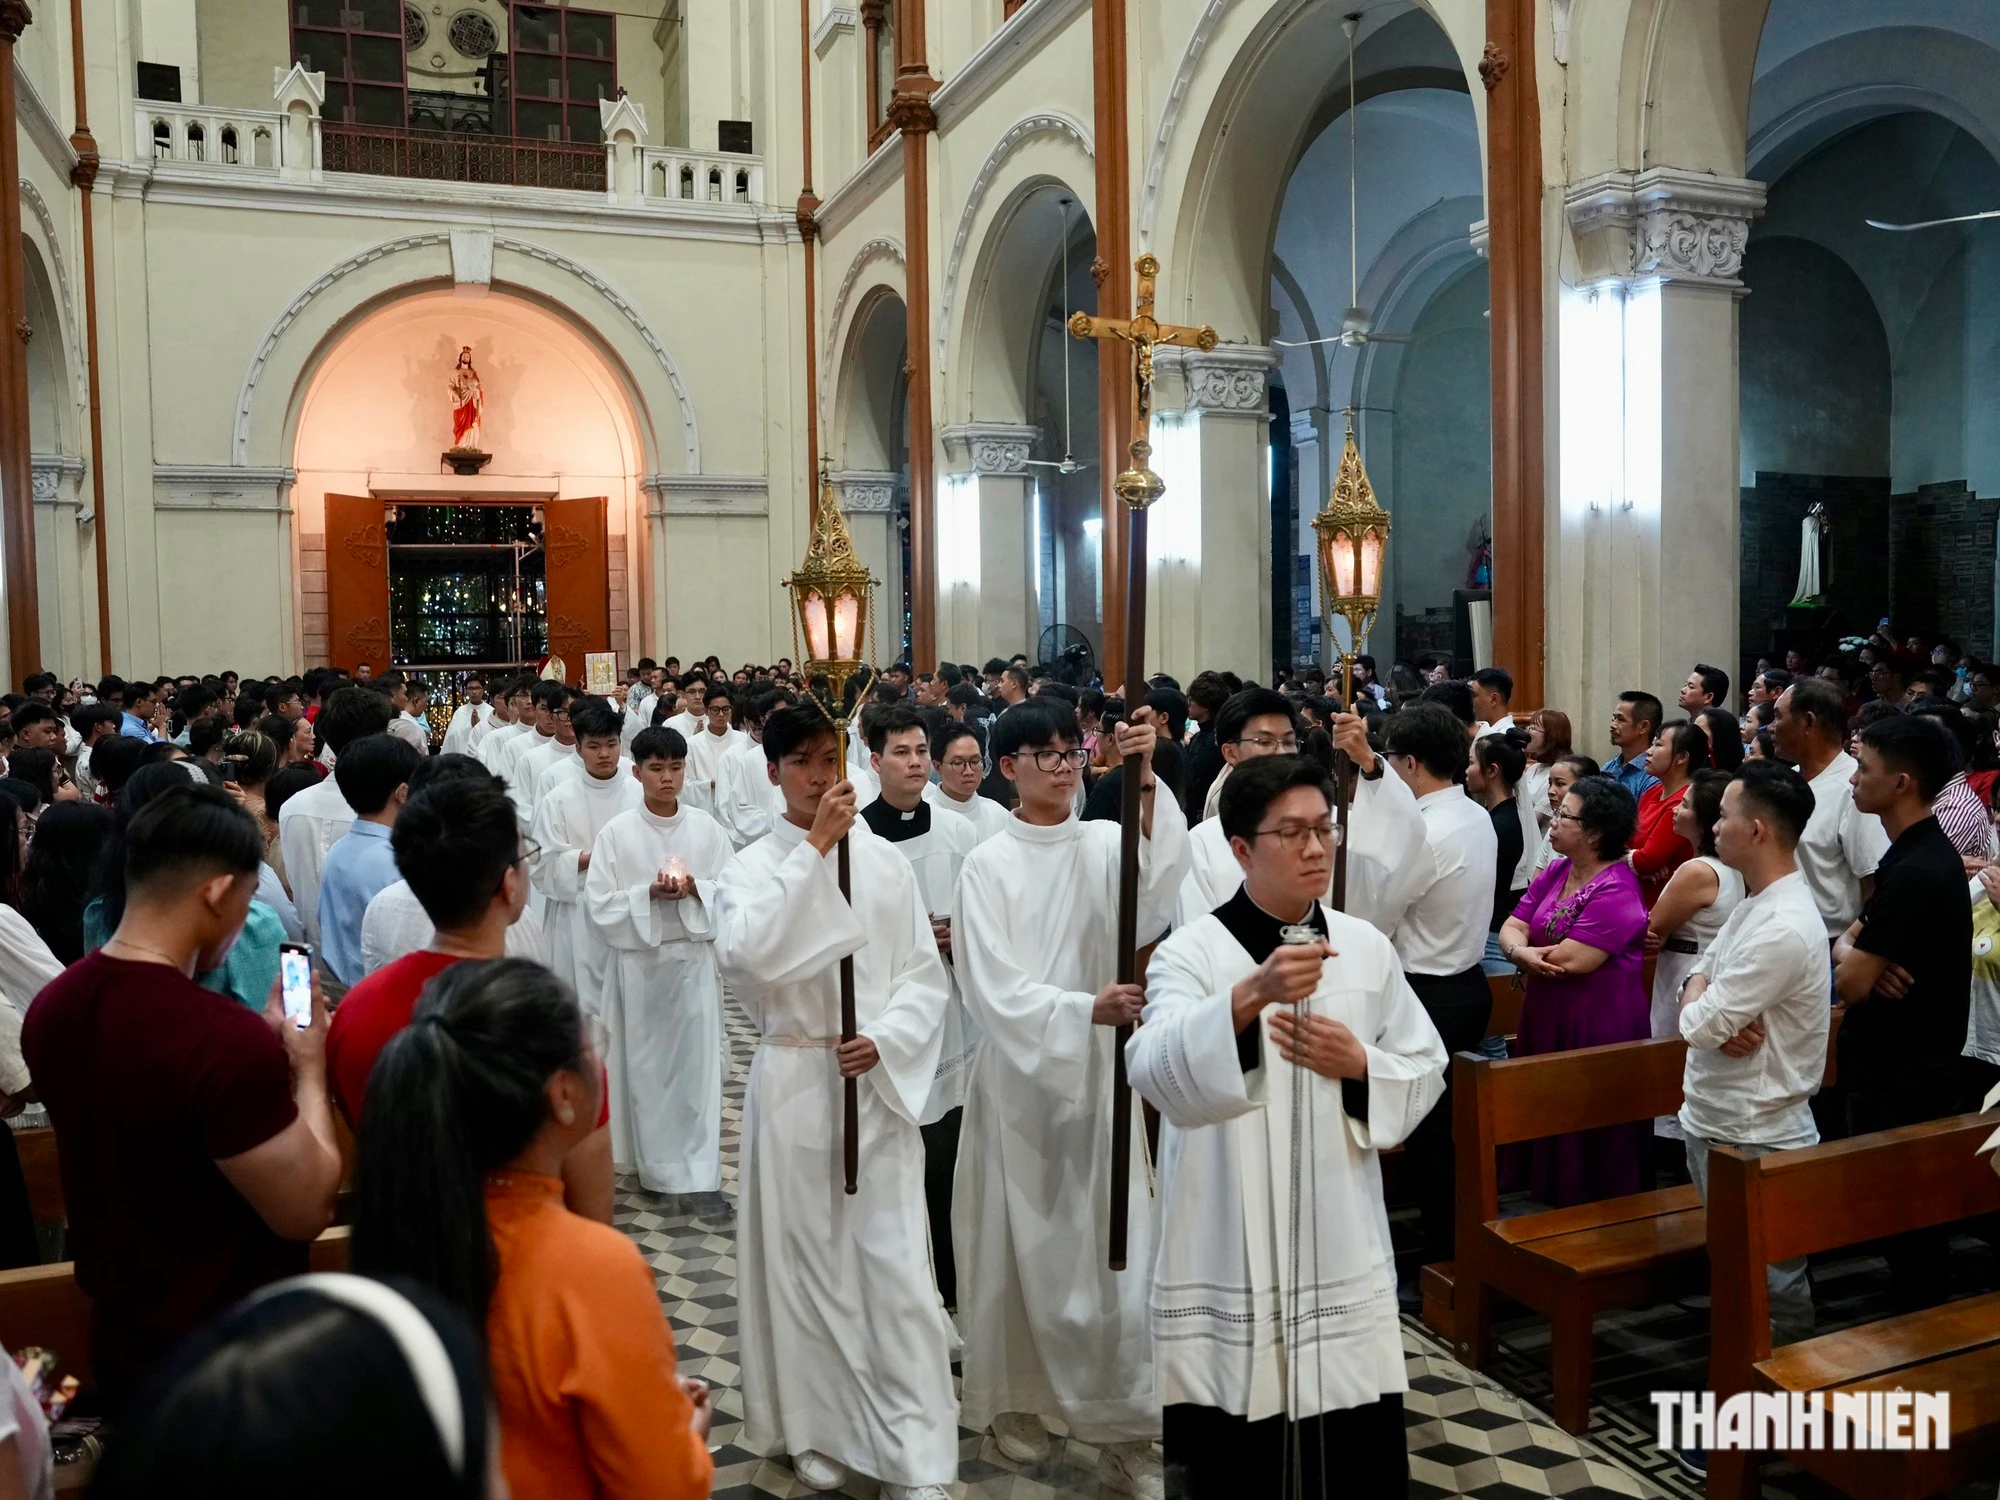 Hơn 1.000 người vào Nhà thờ Đức Bà Sài Gòn làm thánh lễ mừng Chúa Giáng sinh- Ảnh 2.